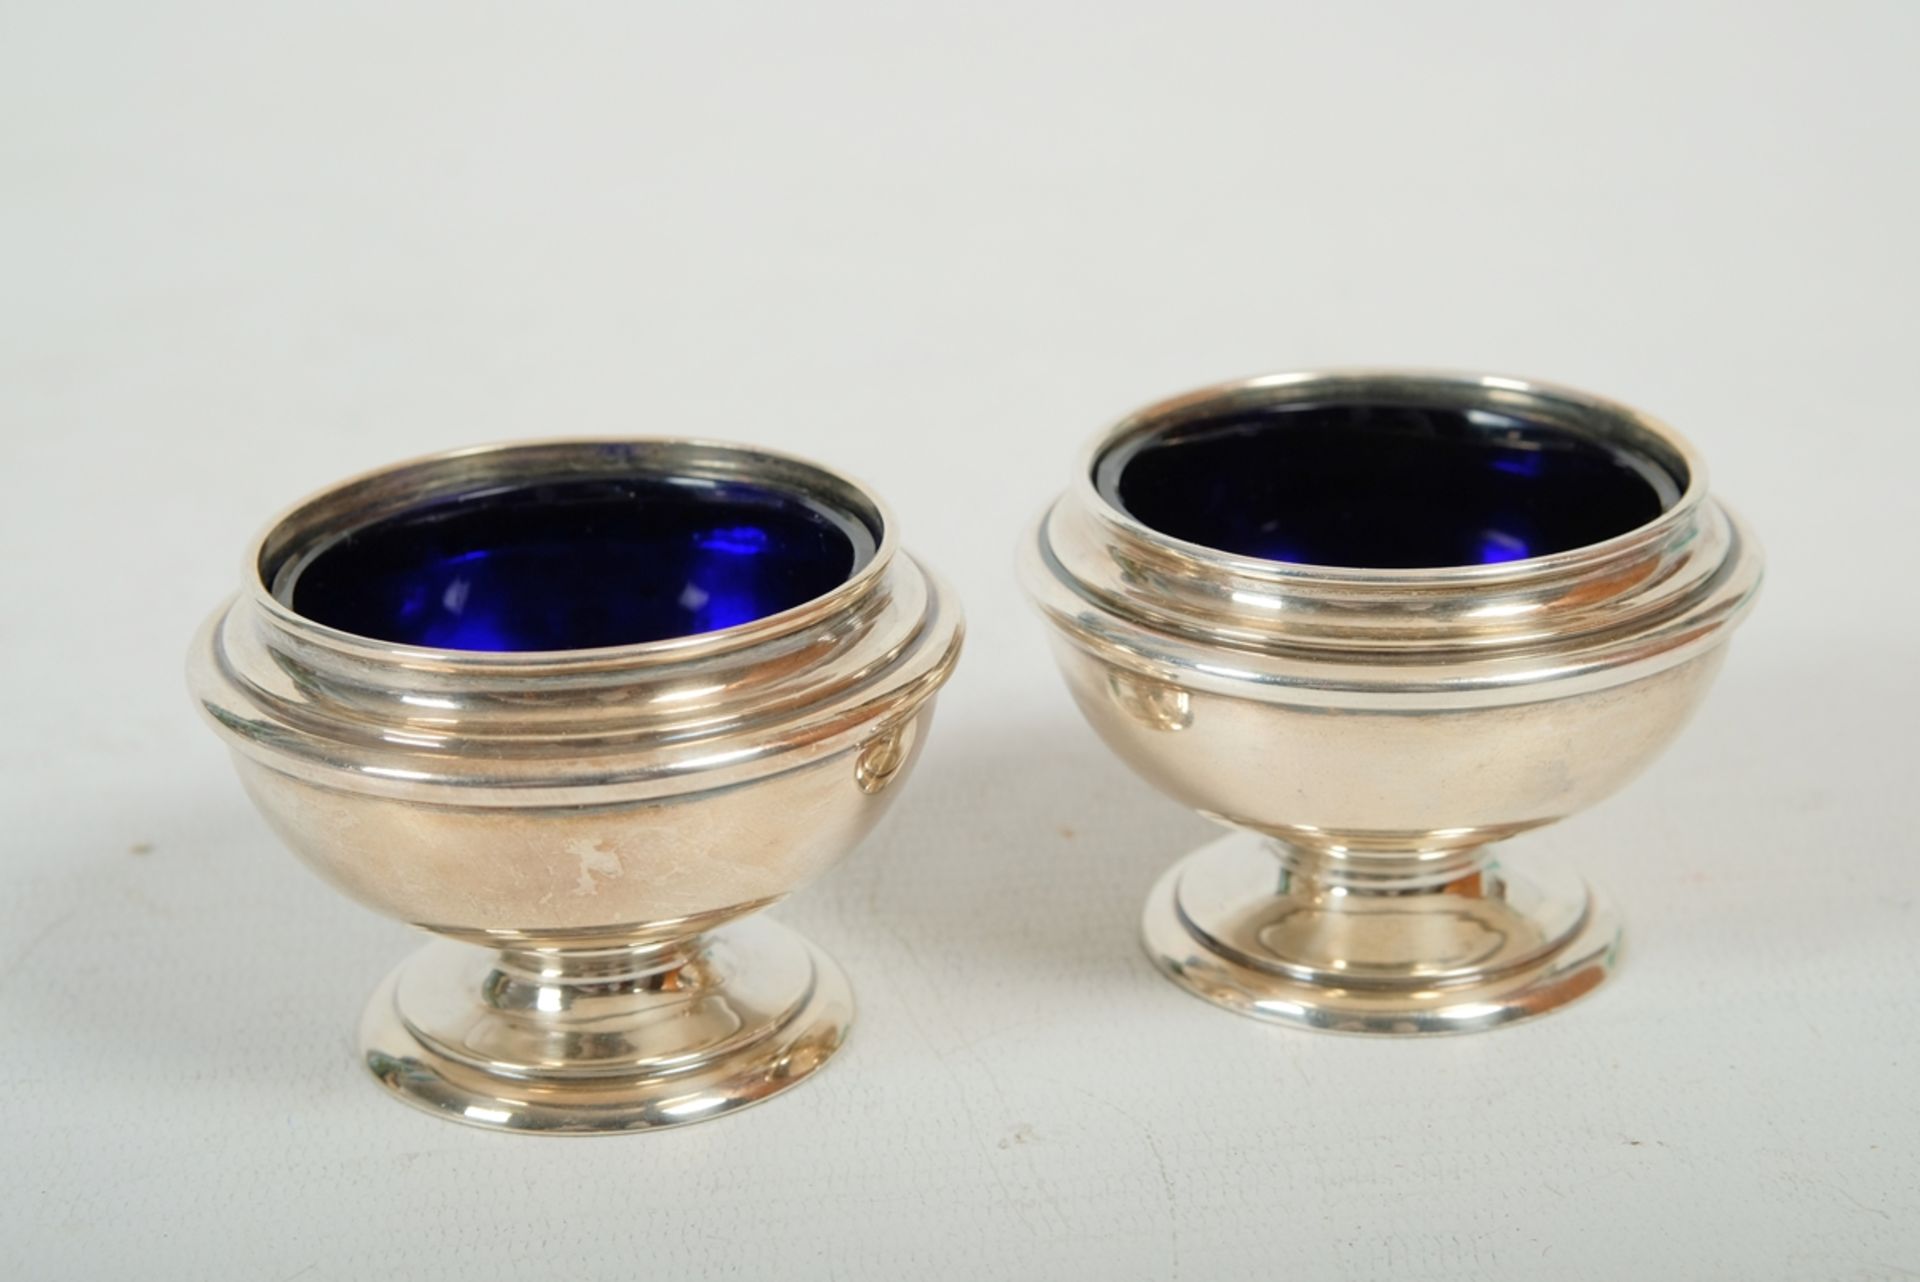 Zwei Senf-Schalen mit Fuß, jeweils mit Kobaltglas-Einsatz, Durchmesser 6,5 cm.